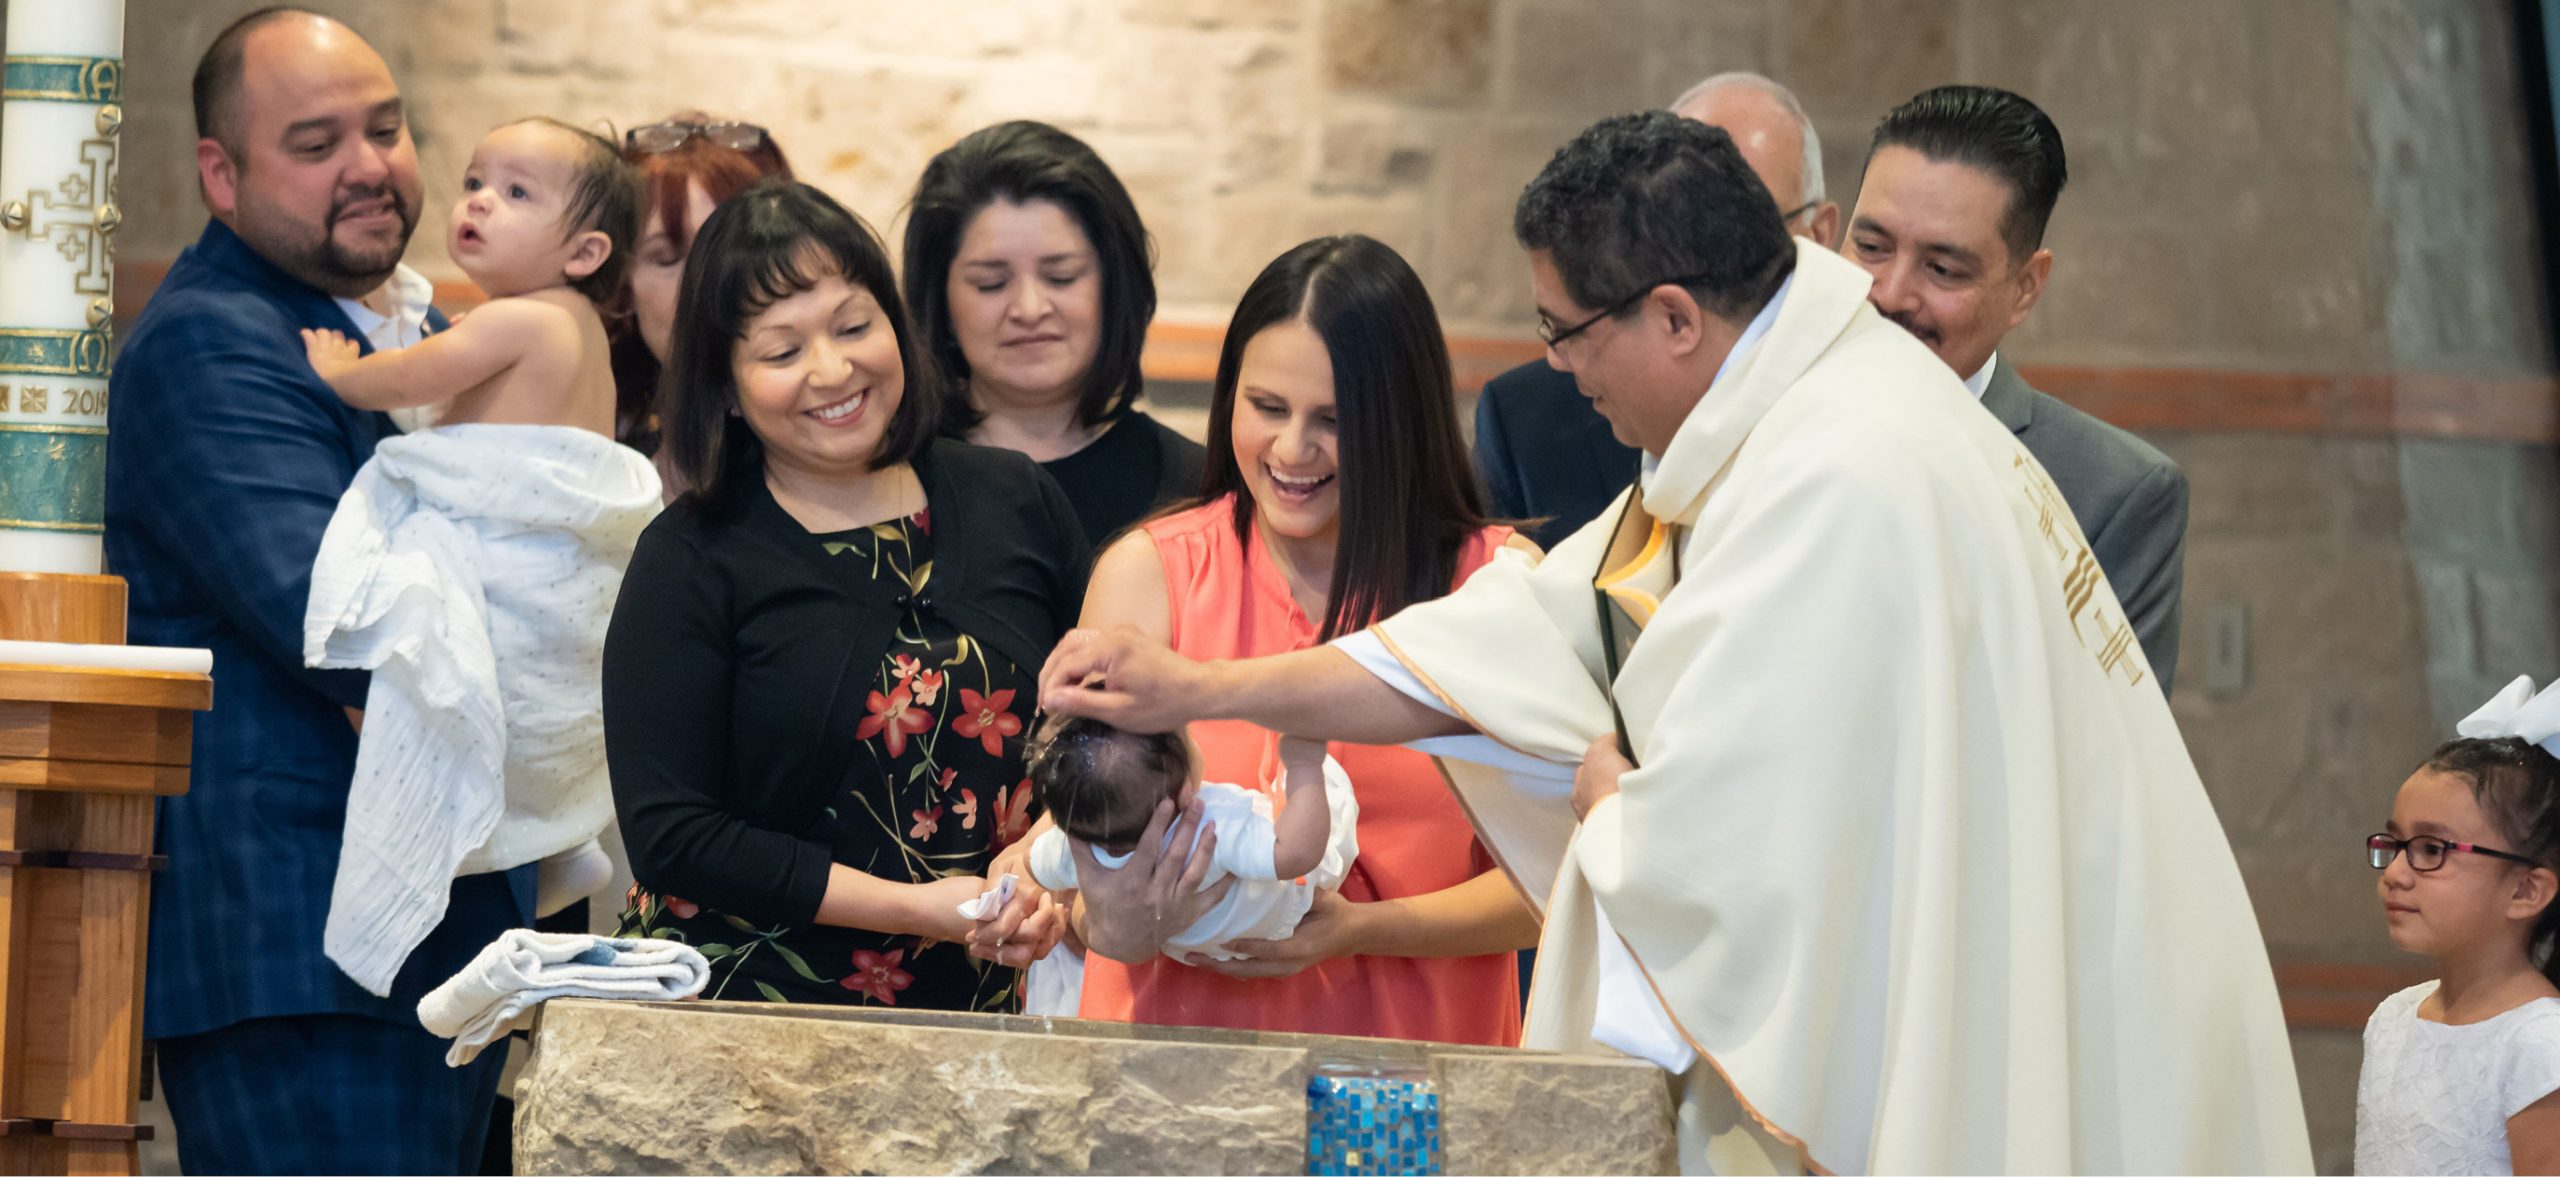 Fr. Tony baptism Palominos